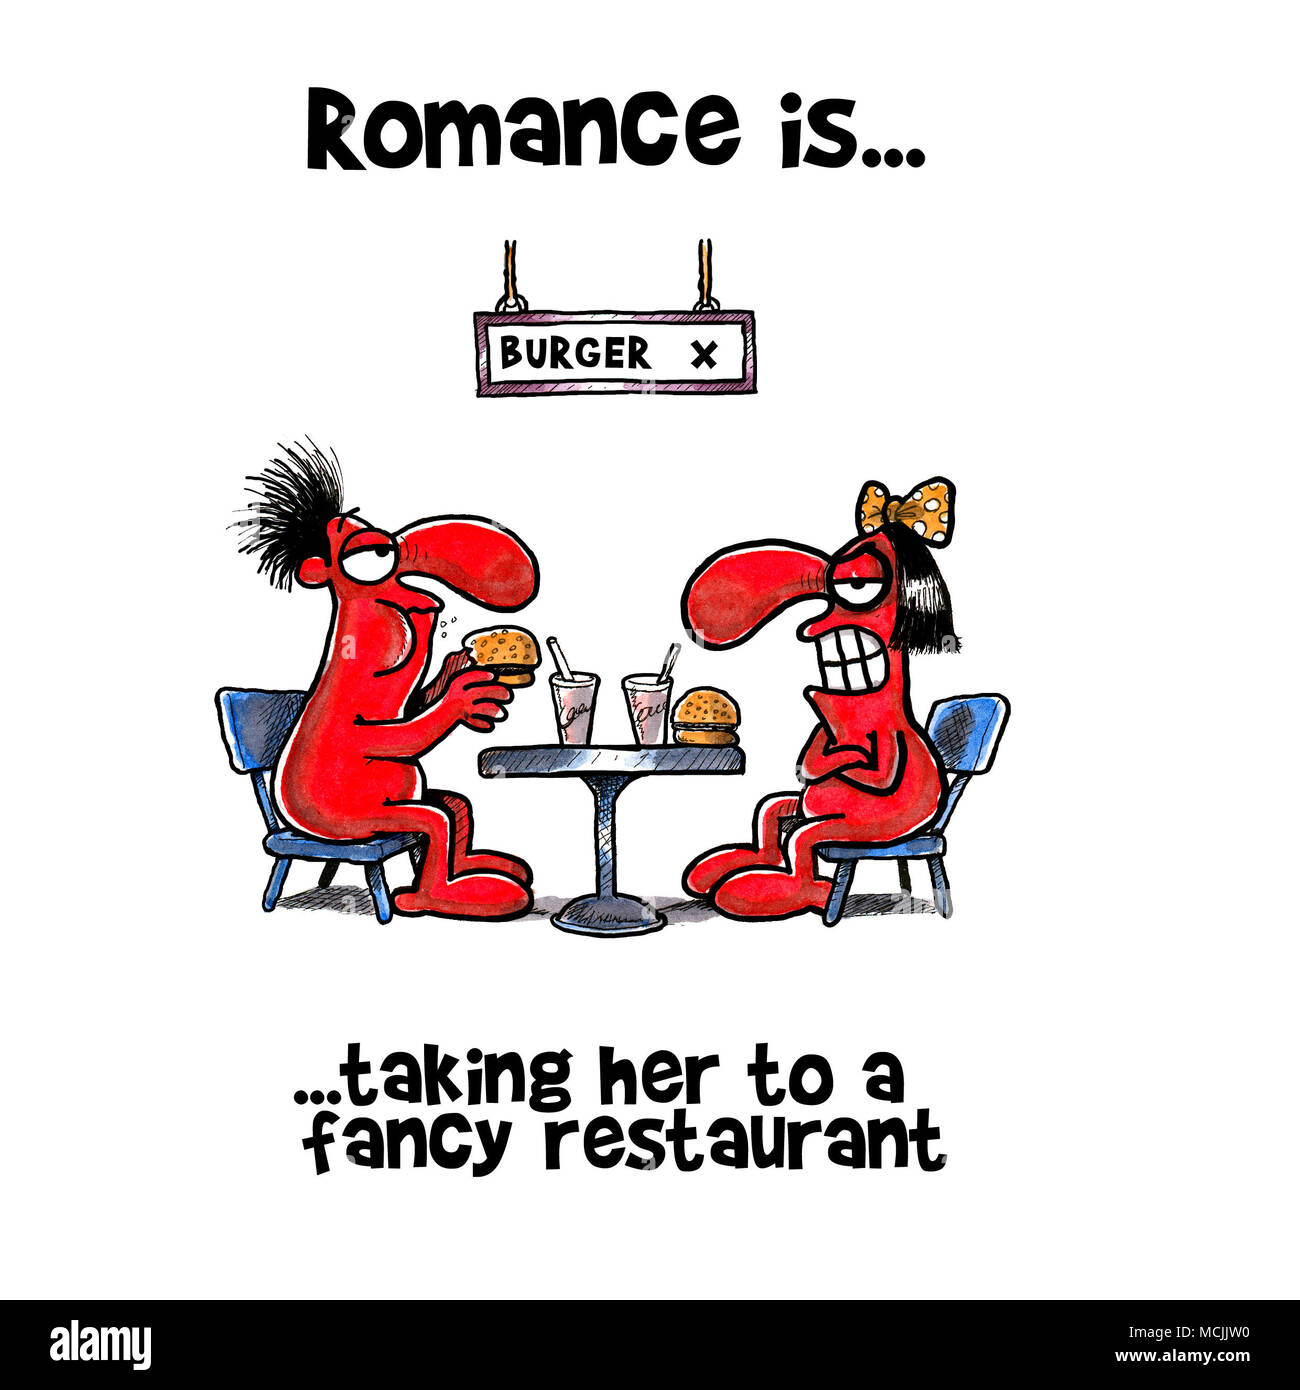 Romantic romanticism Cut Out Stock Images & Pictures - Alamy